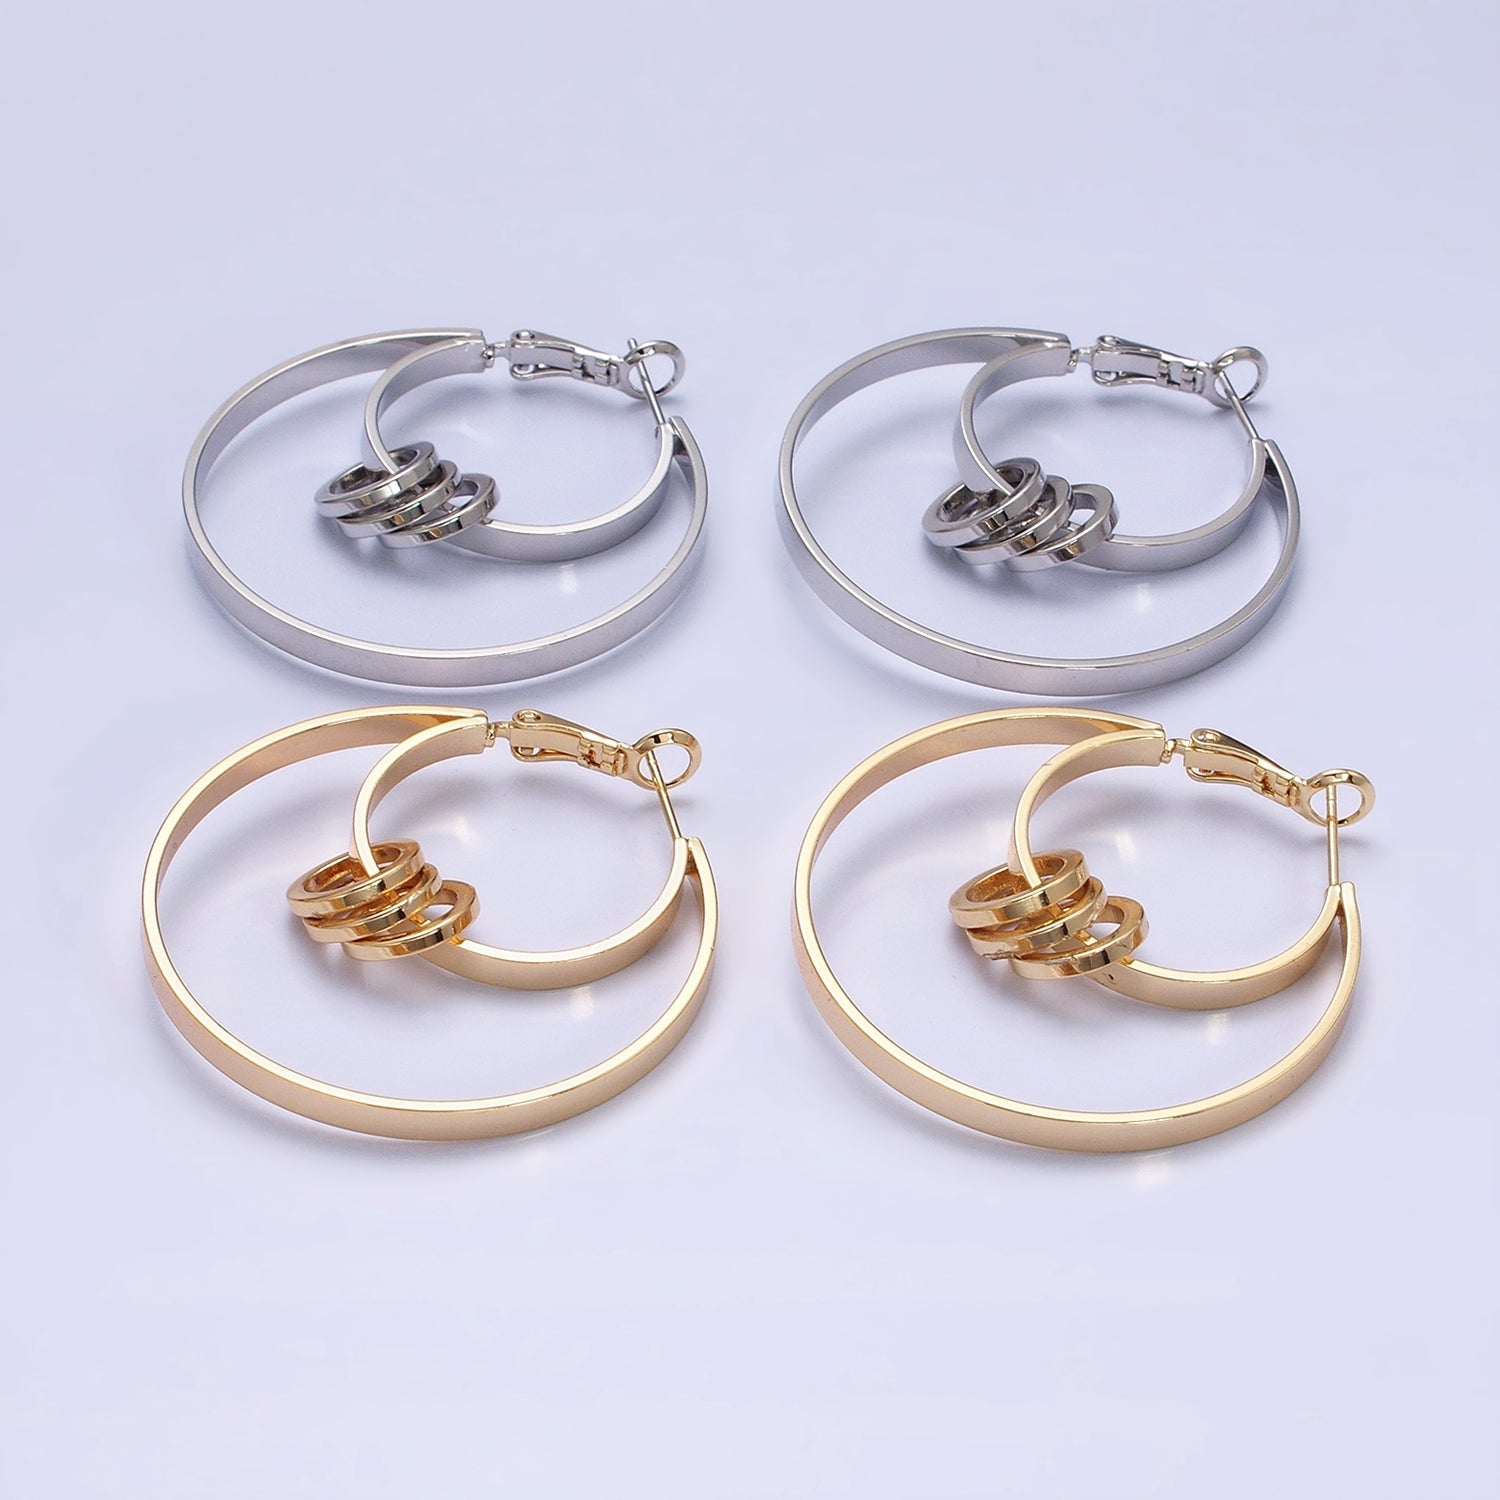 Double Hoop Earrings, Big Gold Hoops, Statement Earrings Silver Round Modern Hoop Earring AE051 AE052 - DLUXCA